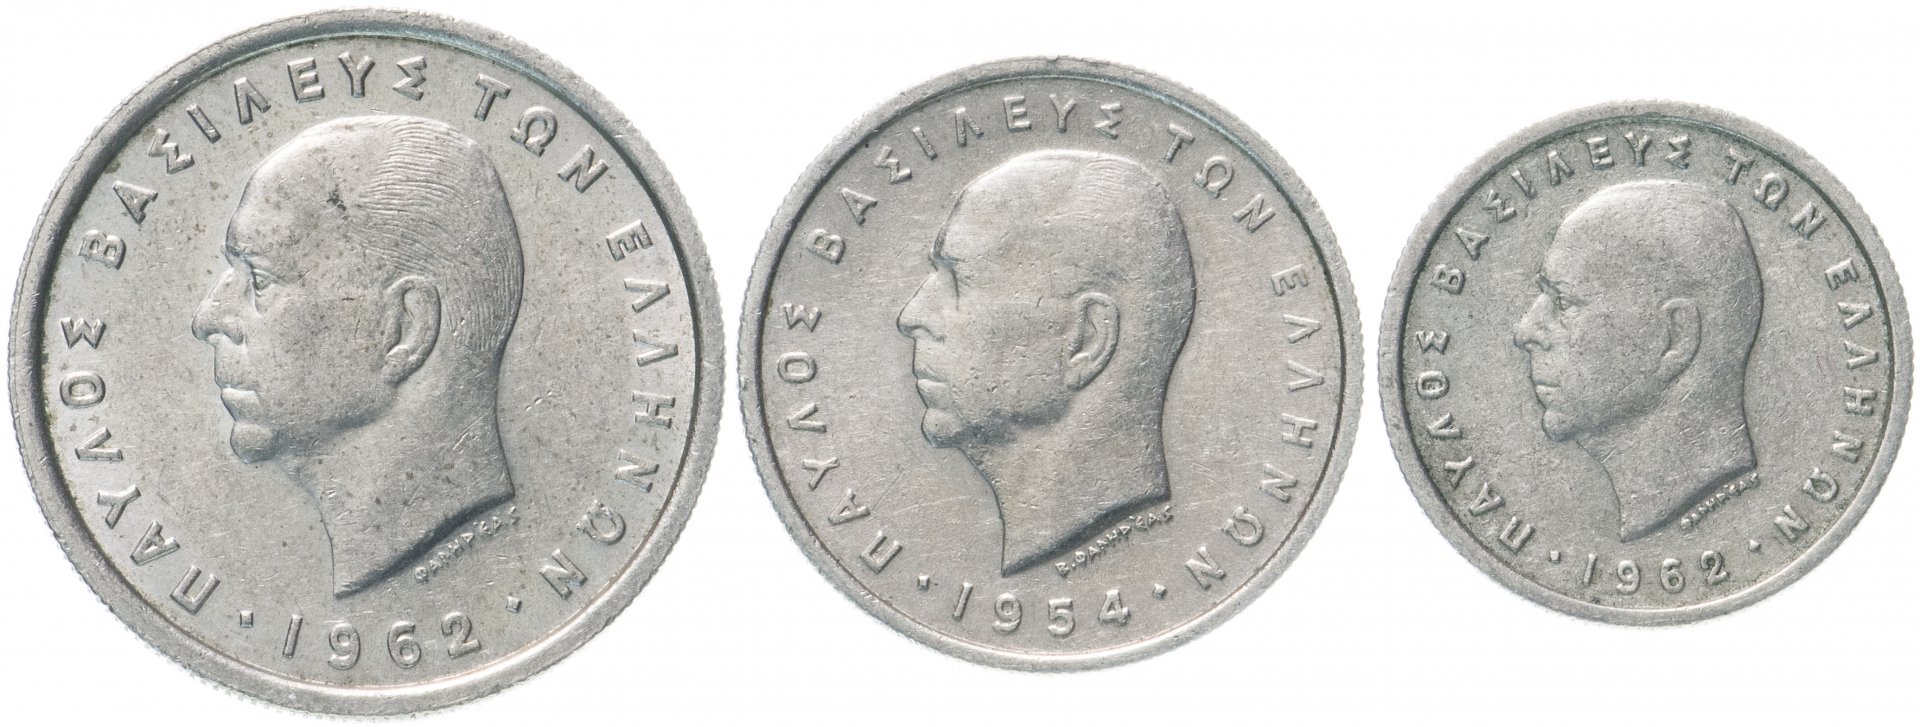 Монеты 1954 года стоимость. 1954 Футбол монета. Набор Греция 1994-1999. 1954 Монетка семейная картинка.